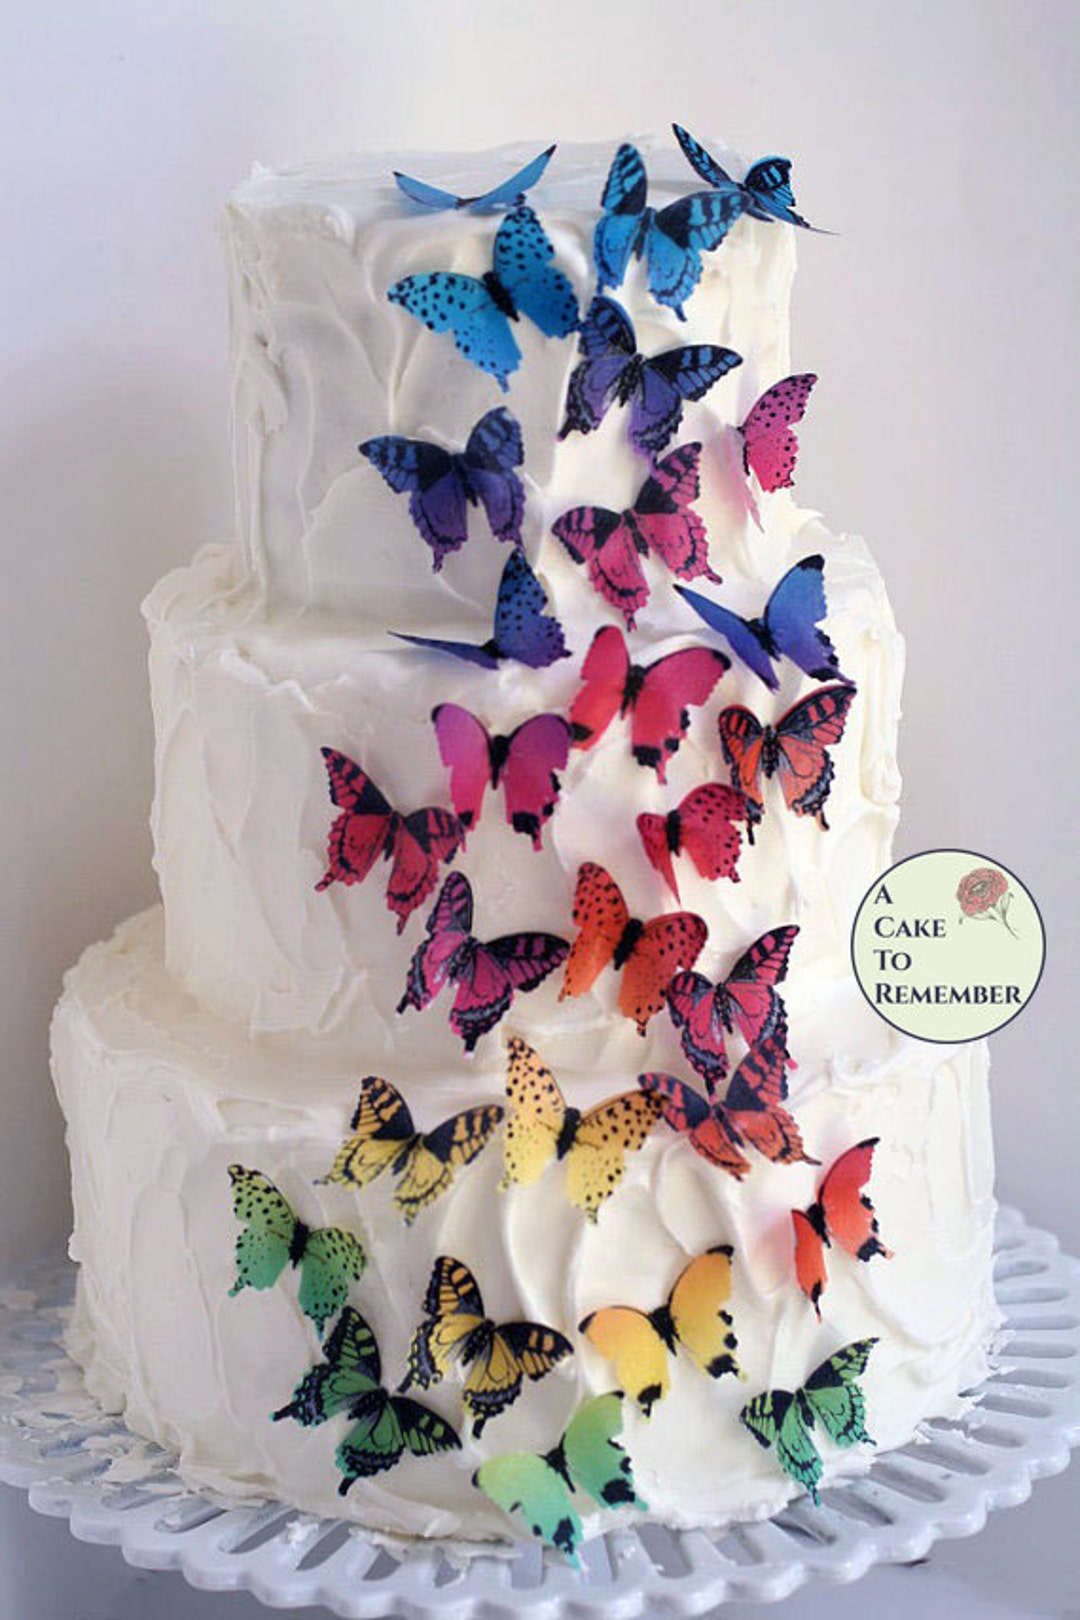 Mariposas comestibles para decoración de pasteles, varios tamaños,  fabricadas de primera calidad en los Estados Unidos, adornos para pasteles  de